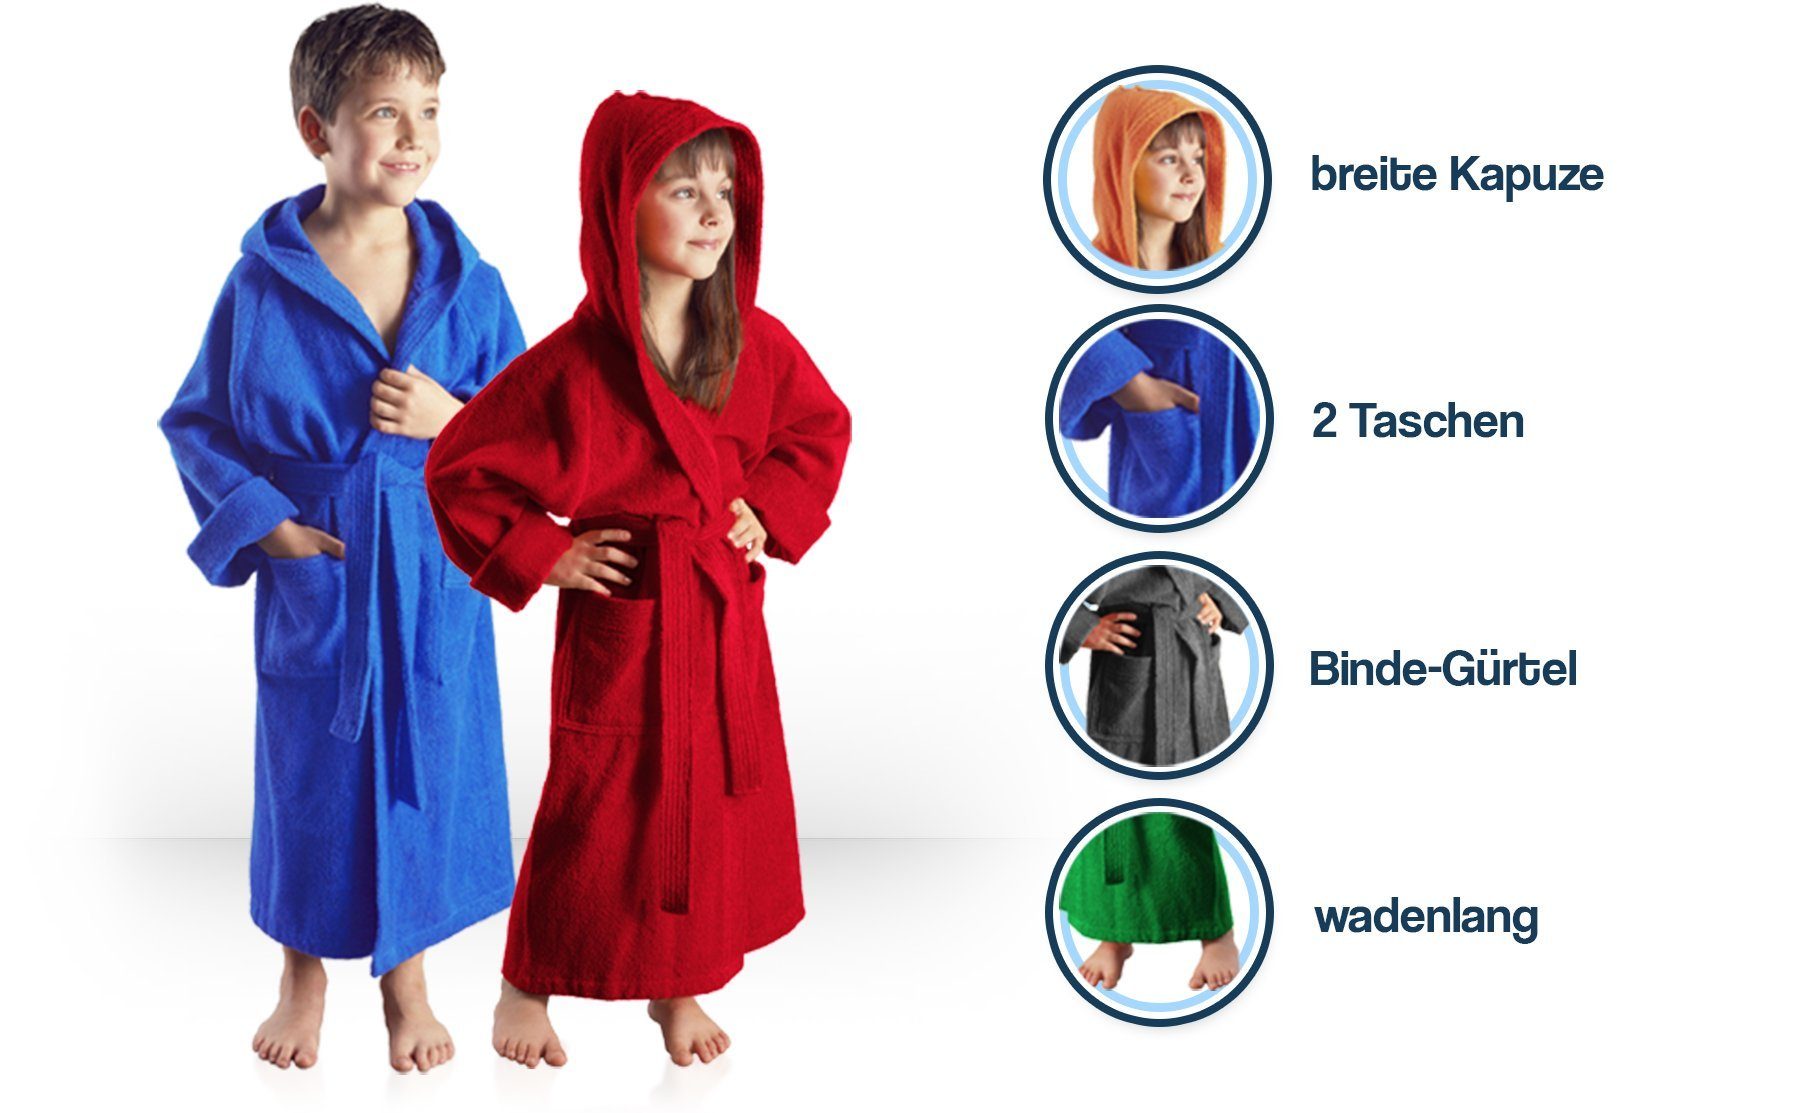 Arus Kinderbademantel für Jungen zwei Taschen, Orange Baumwolle, mit farbenfroh Mädchen, und Kapuze, mit 100